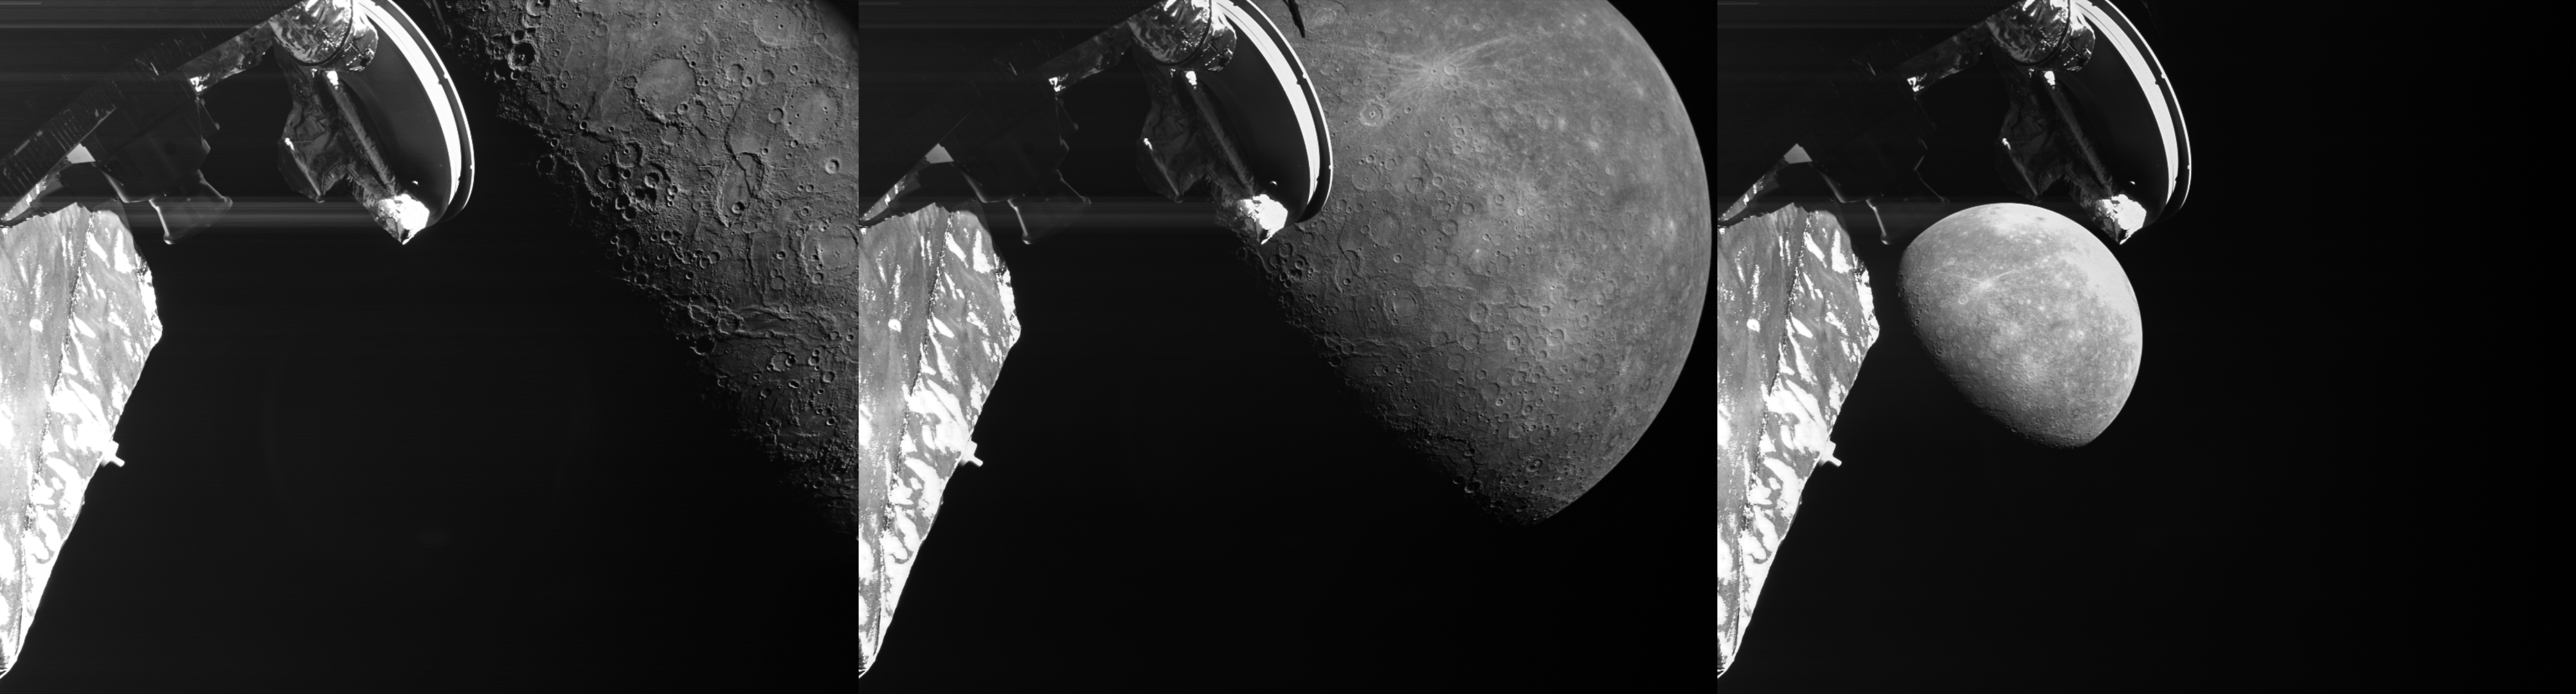 Un trío de imágenes destaca el tercer sobrevuelo de Mercurio de BepiColombo